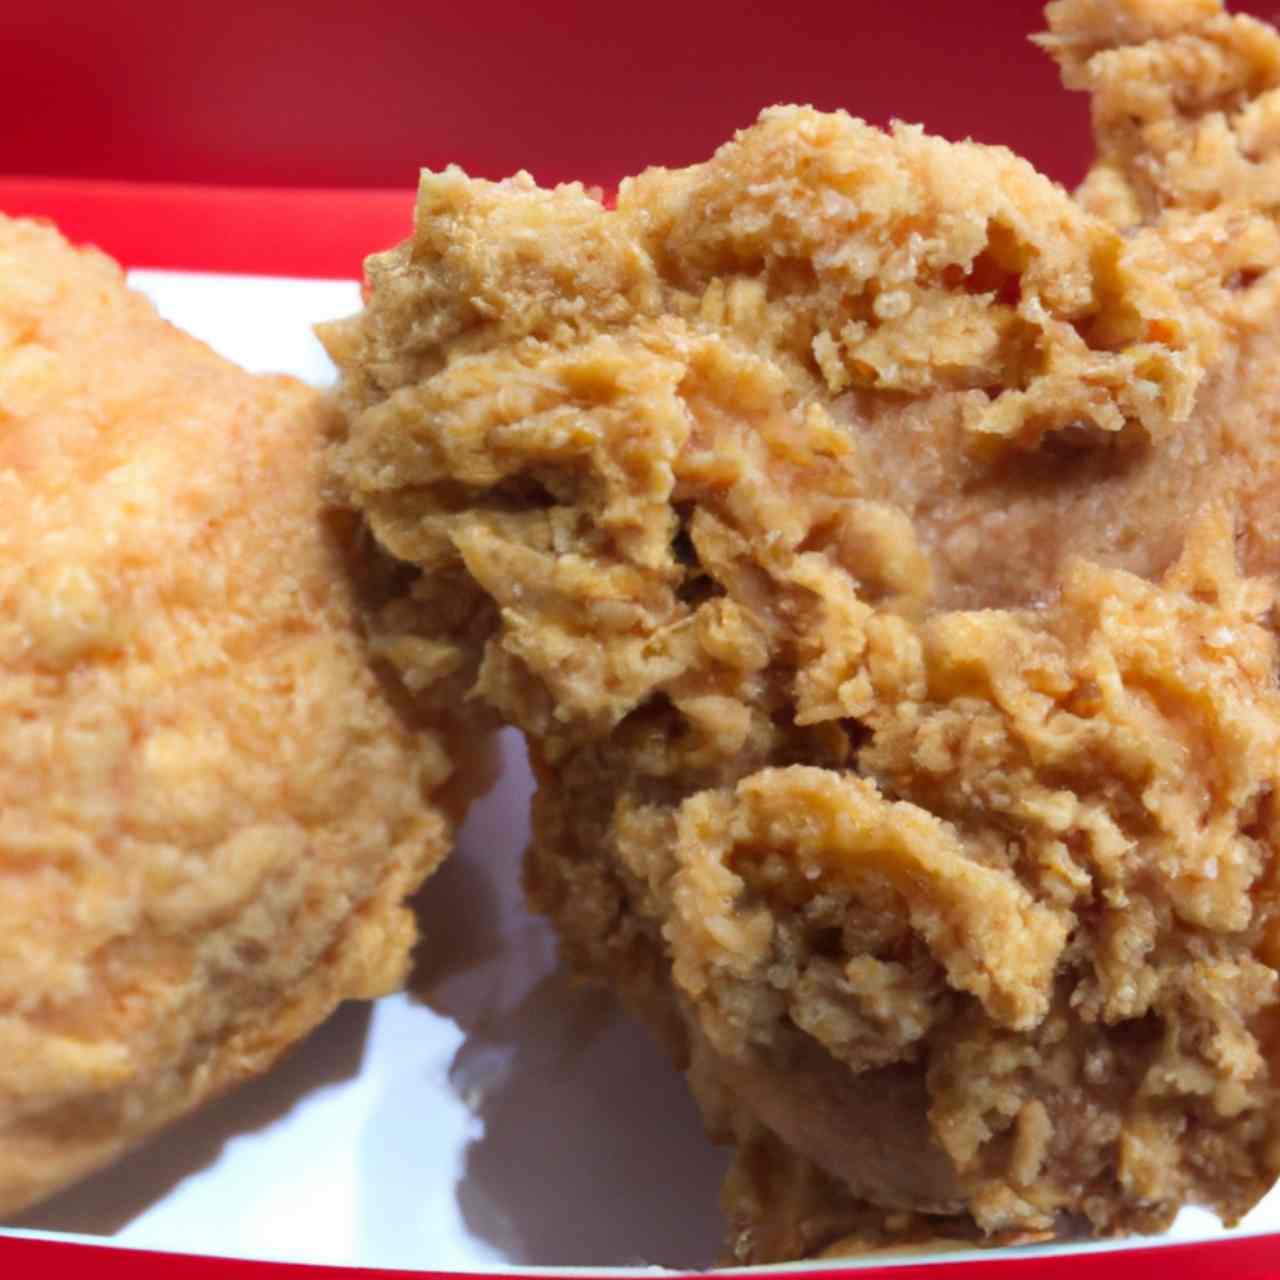 KFC Original vs. Extra Crispy